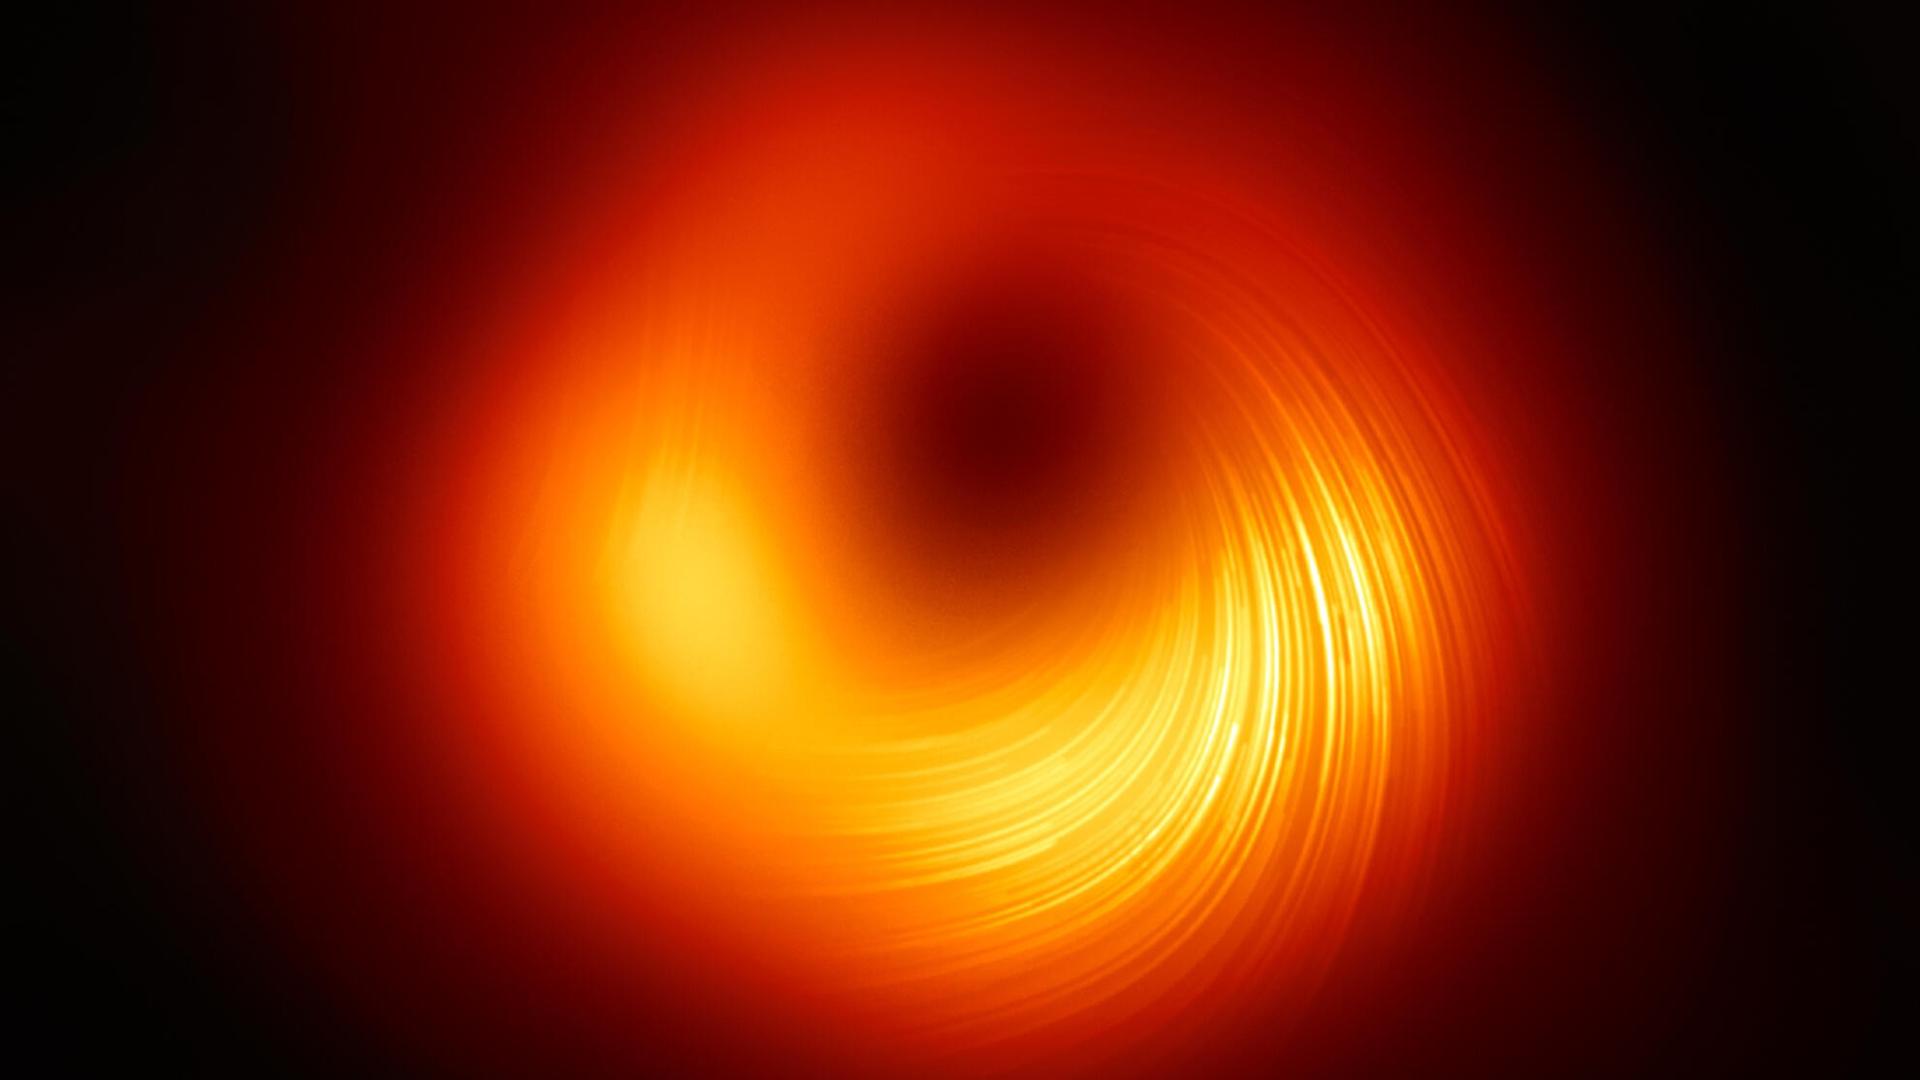 Das Bild des "Schattens" des Schwarzen Lochs im Zentrum der Galaxie M87 mit eingezeichneten Polarisations-"Feldlinien".